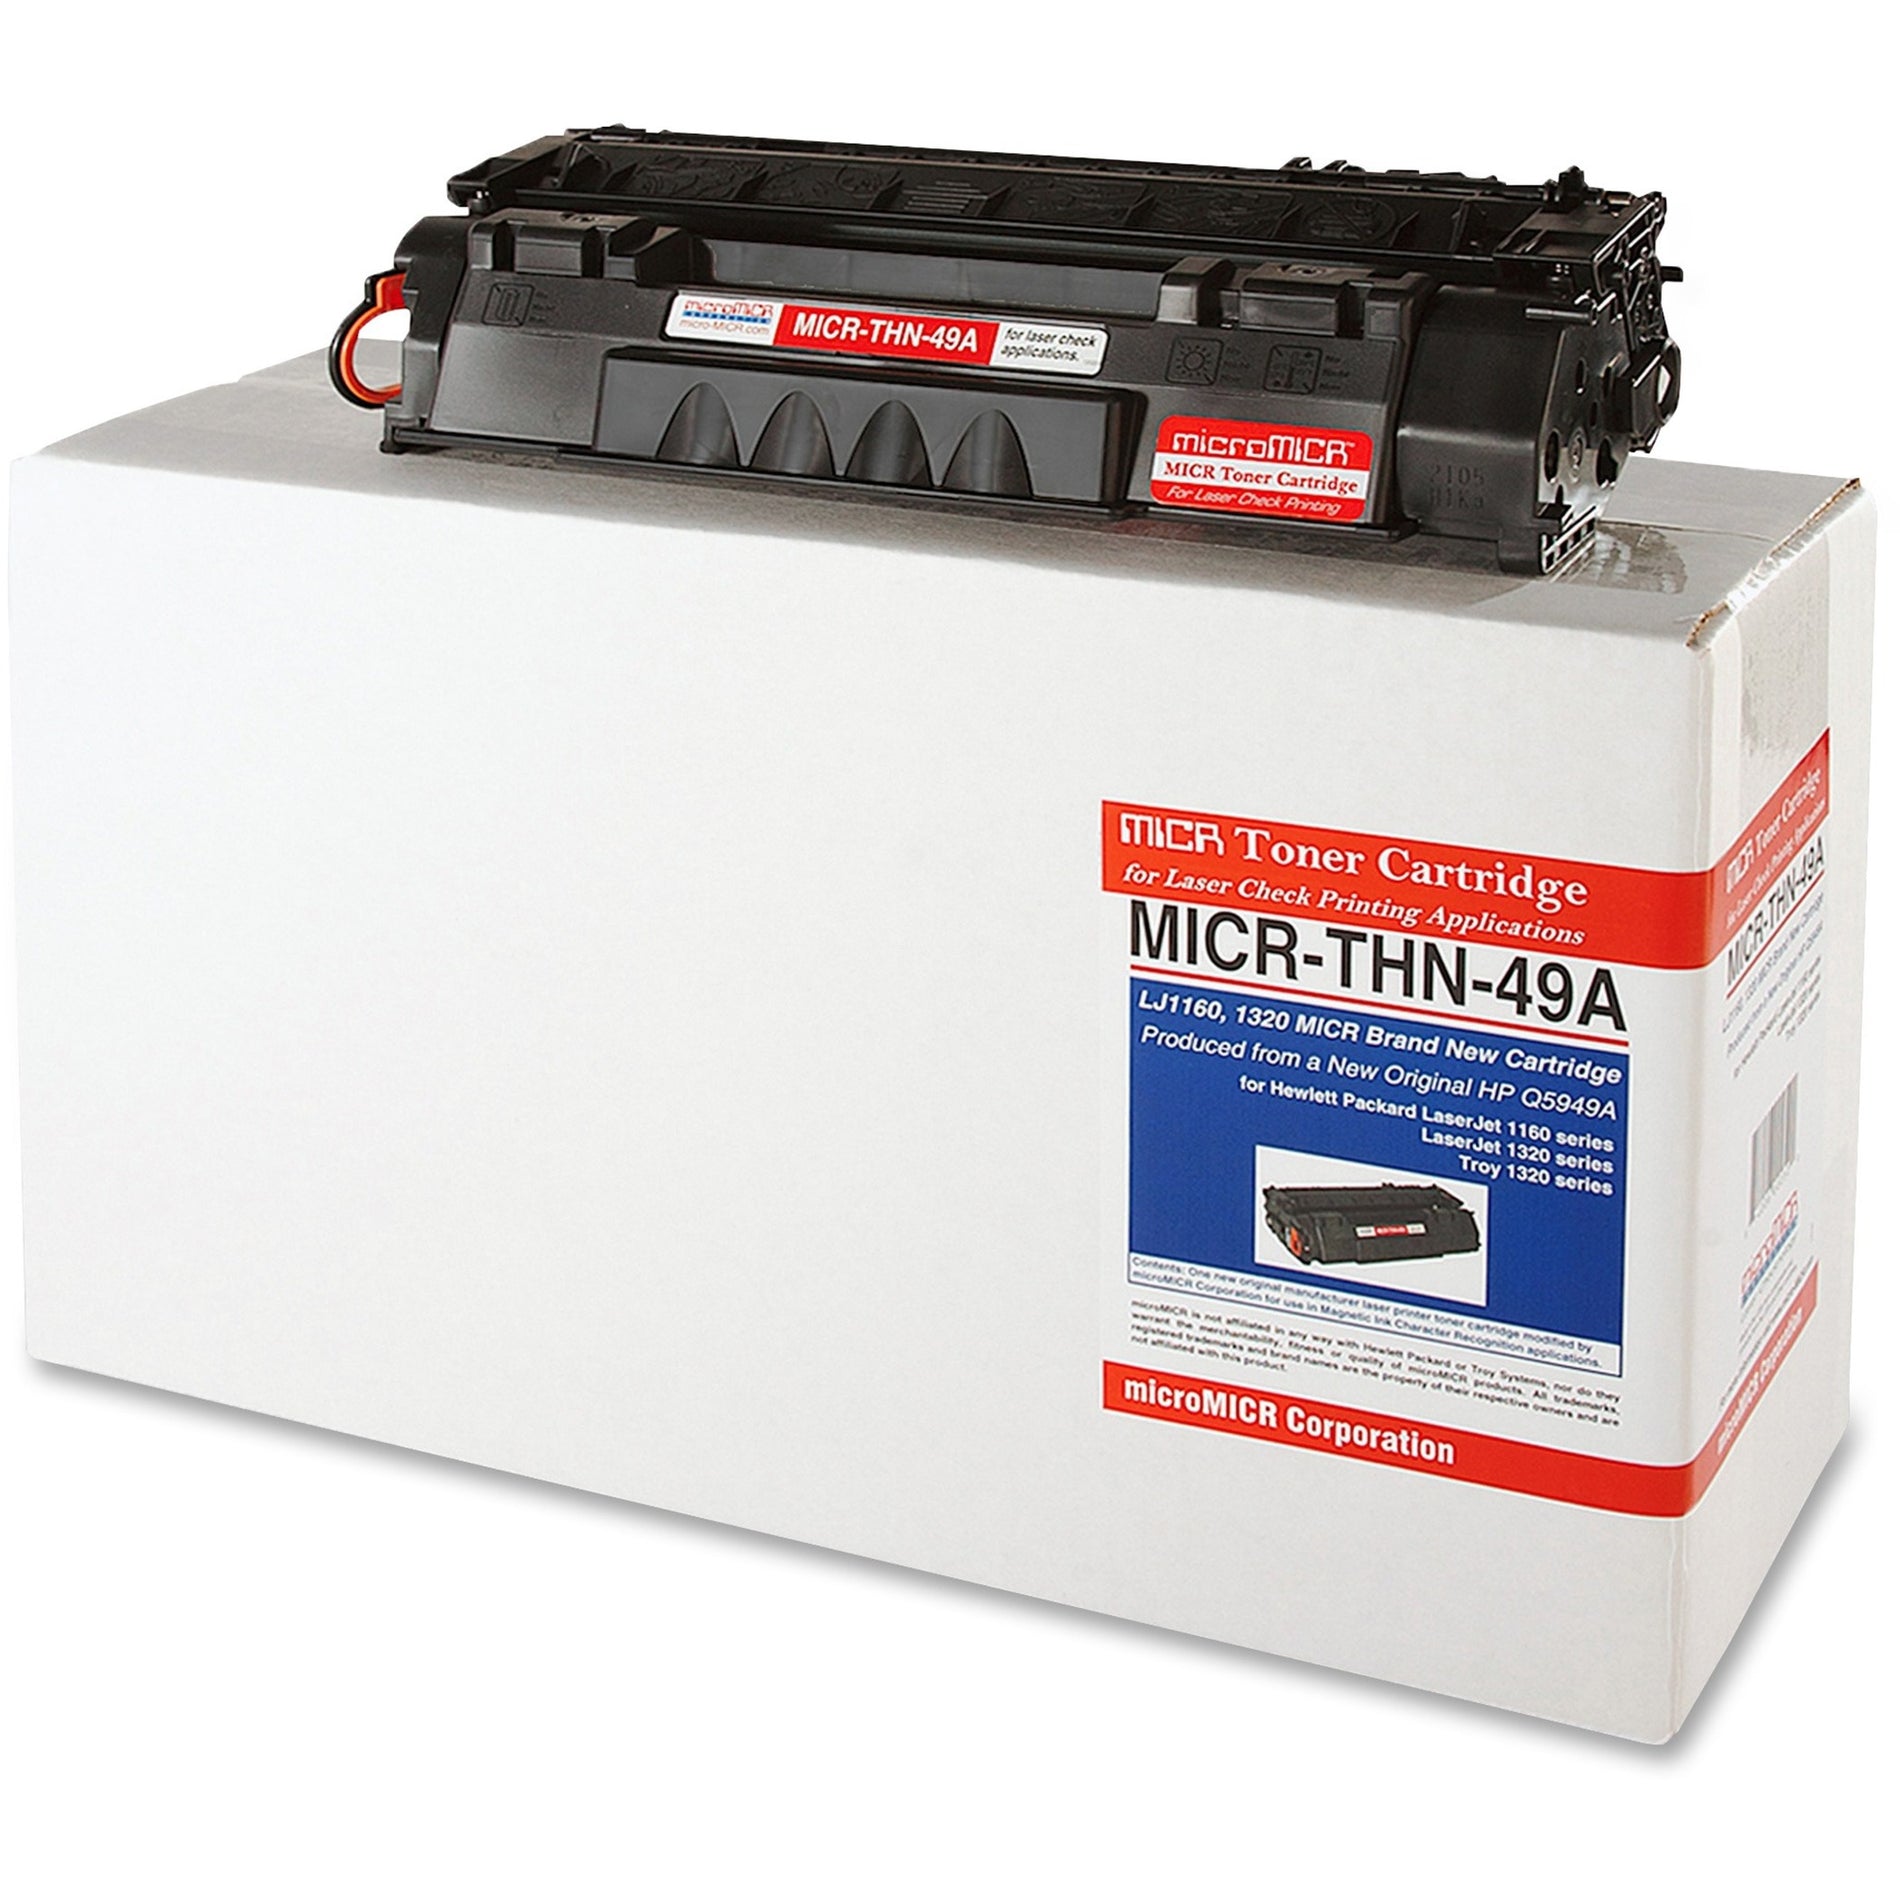 microMICR MICR Toner Cartridge - Alternative for HP 49A (MICR-THN-49A)